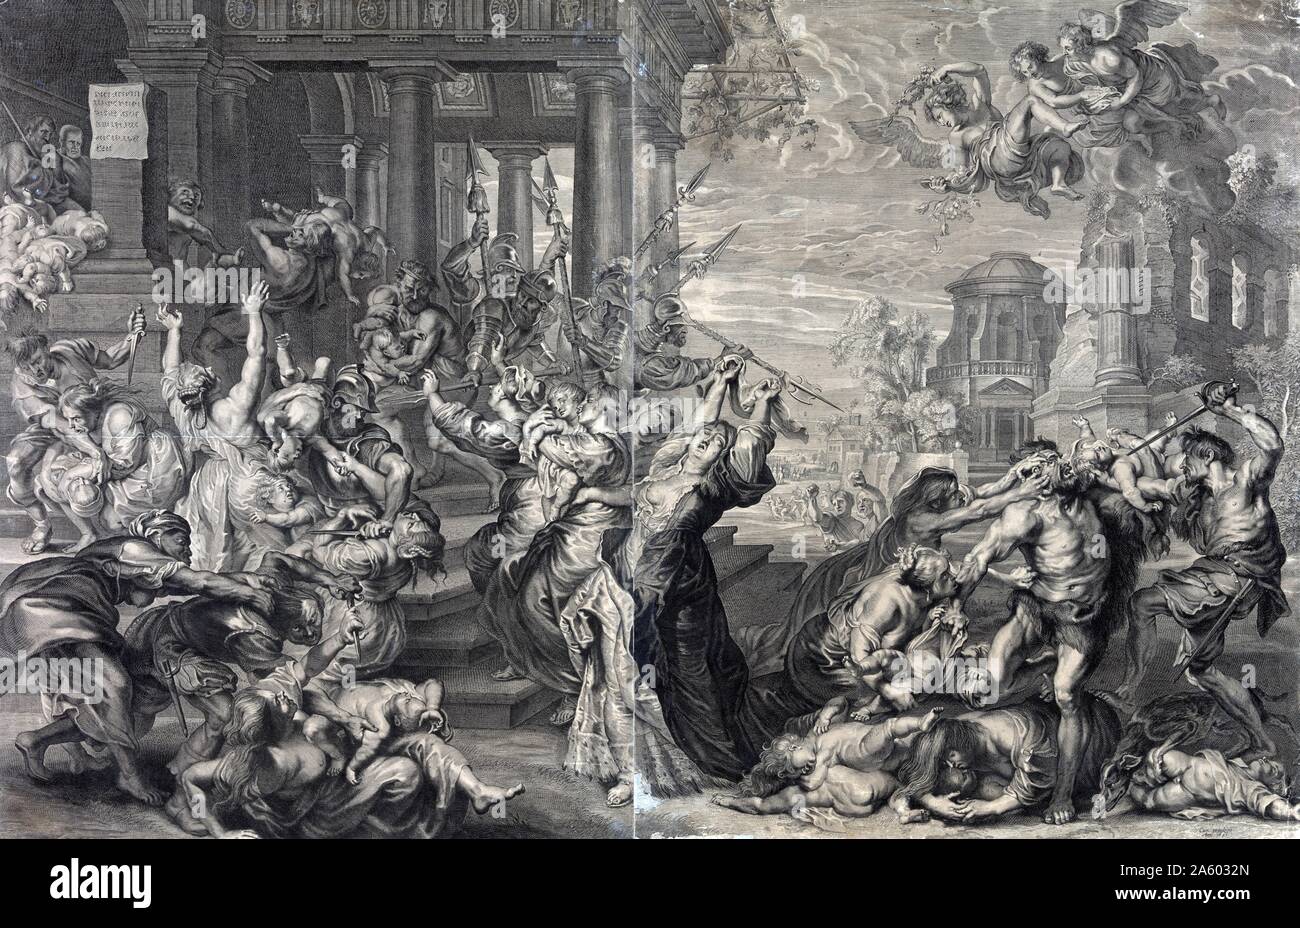 La stampa che mostra la strage degli innocenti ordinata da Erode, dal XVII secolo prospettiva da Peter Paul Rubens. Stampa, incisione, mostra la strage degli innocenti ordinata da Erode, dal XVII secolo prospettiva. Foto Stock